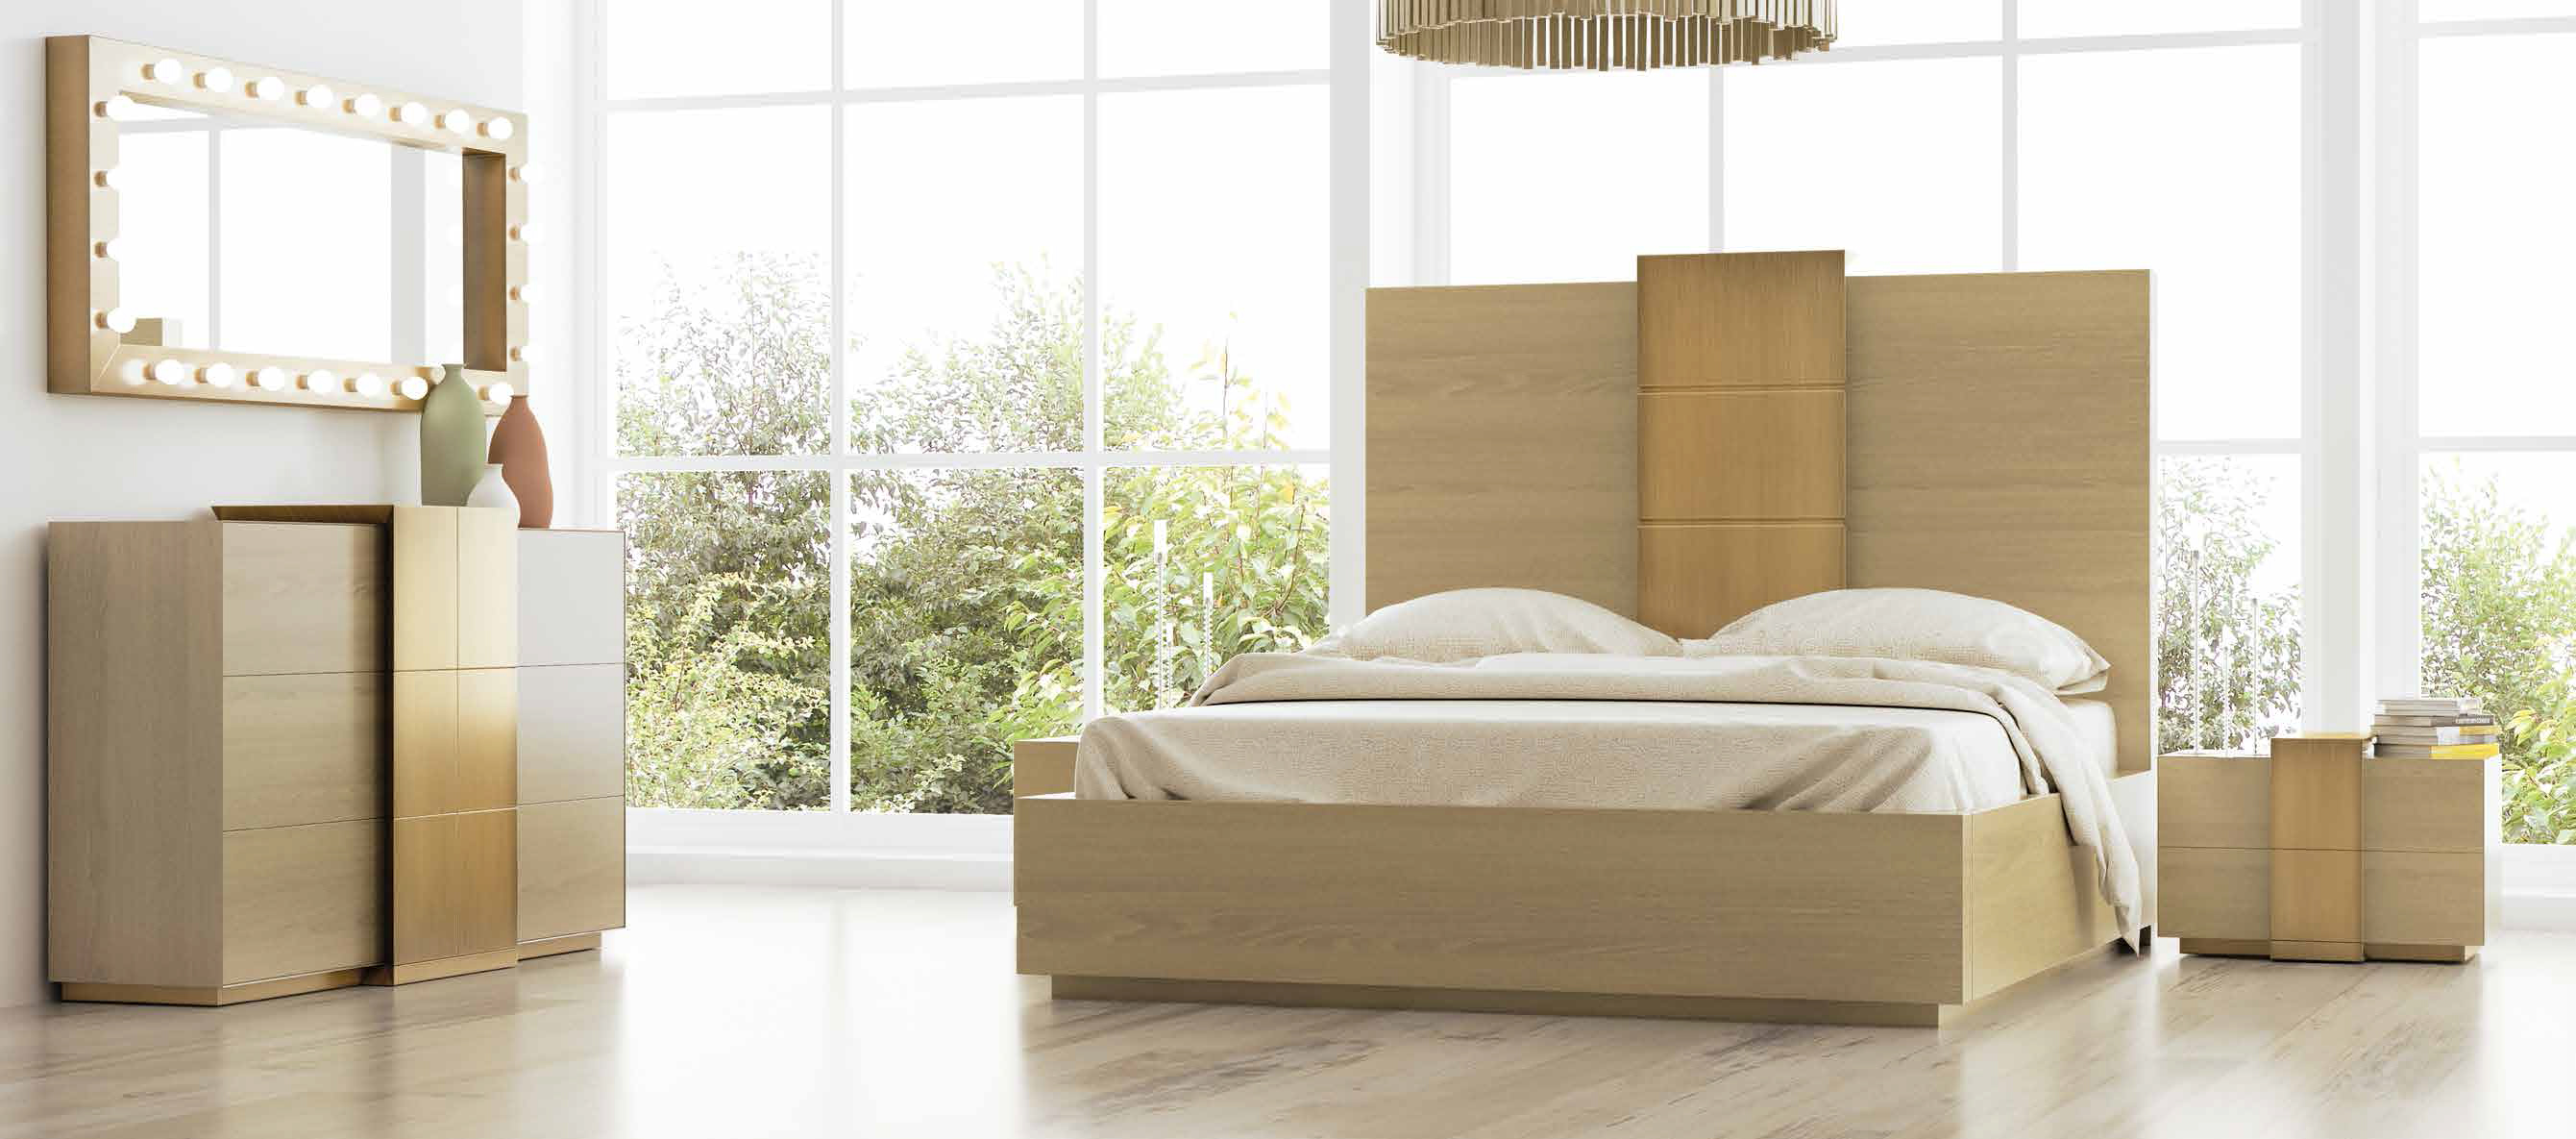 Brands Franco Furniture Avanty Bedrooms, Spain DOR 10